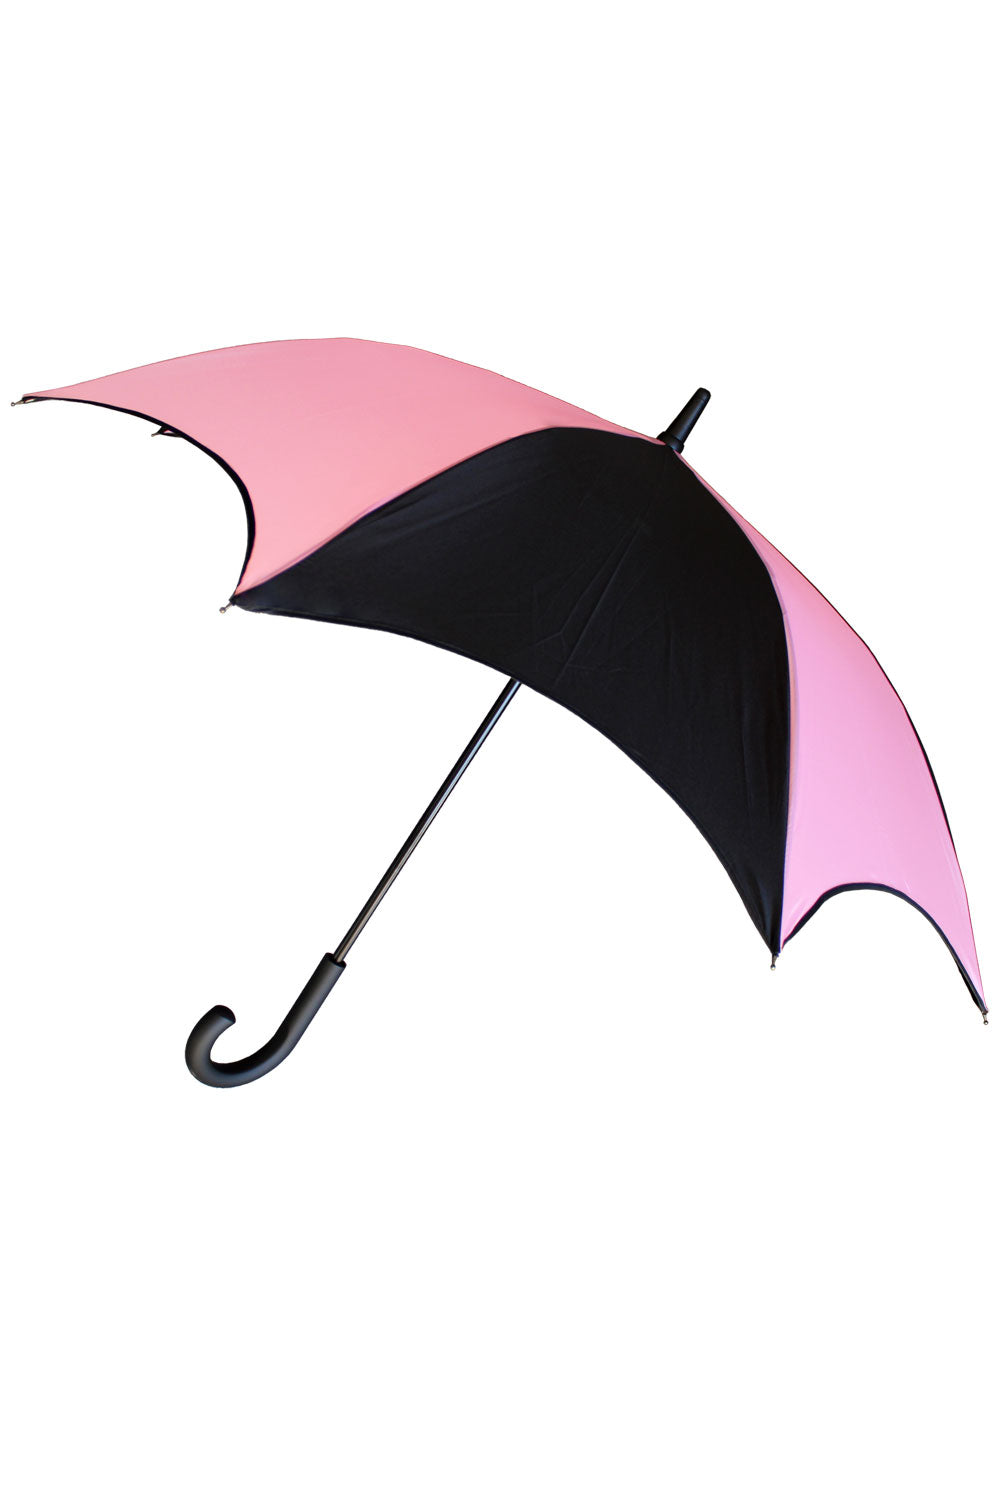 pastel goth umbrella